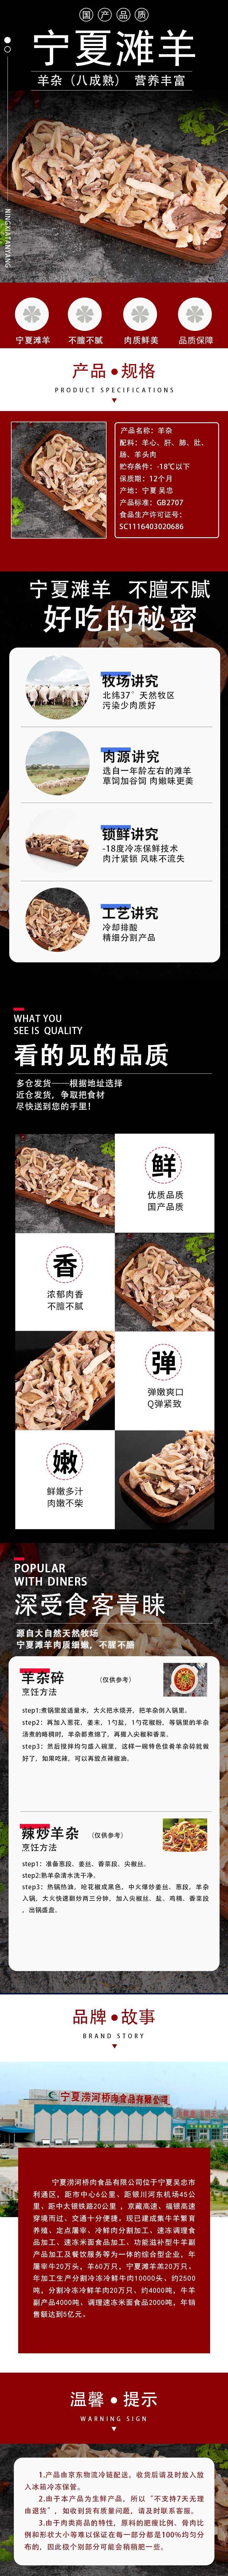 涝河桥 宁夏滩羊 国产精品羊杂 500g/袋  火锅食材